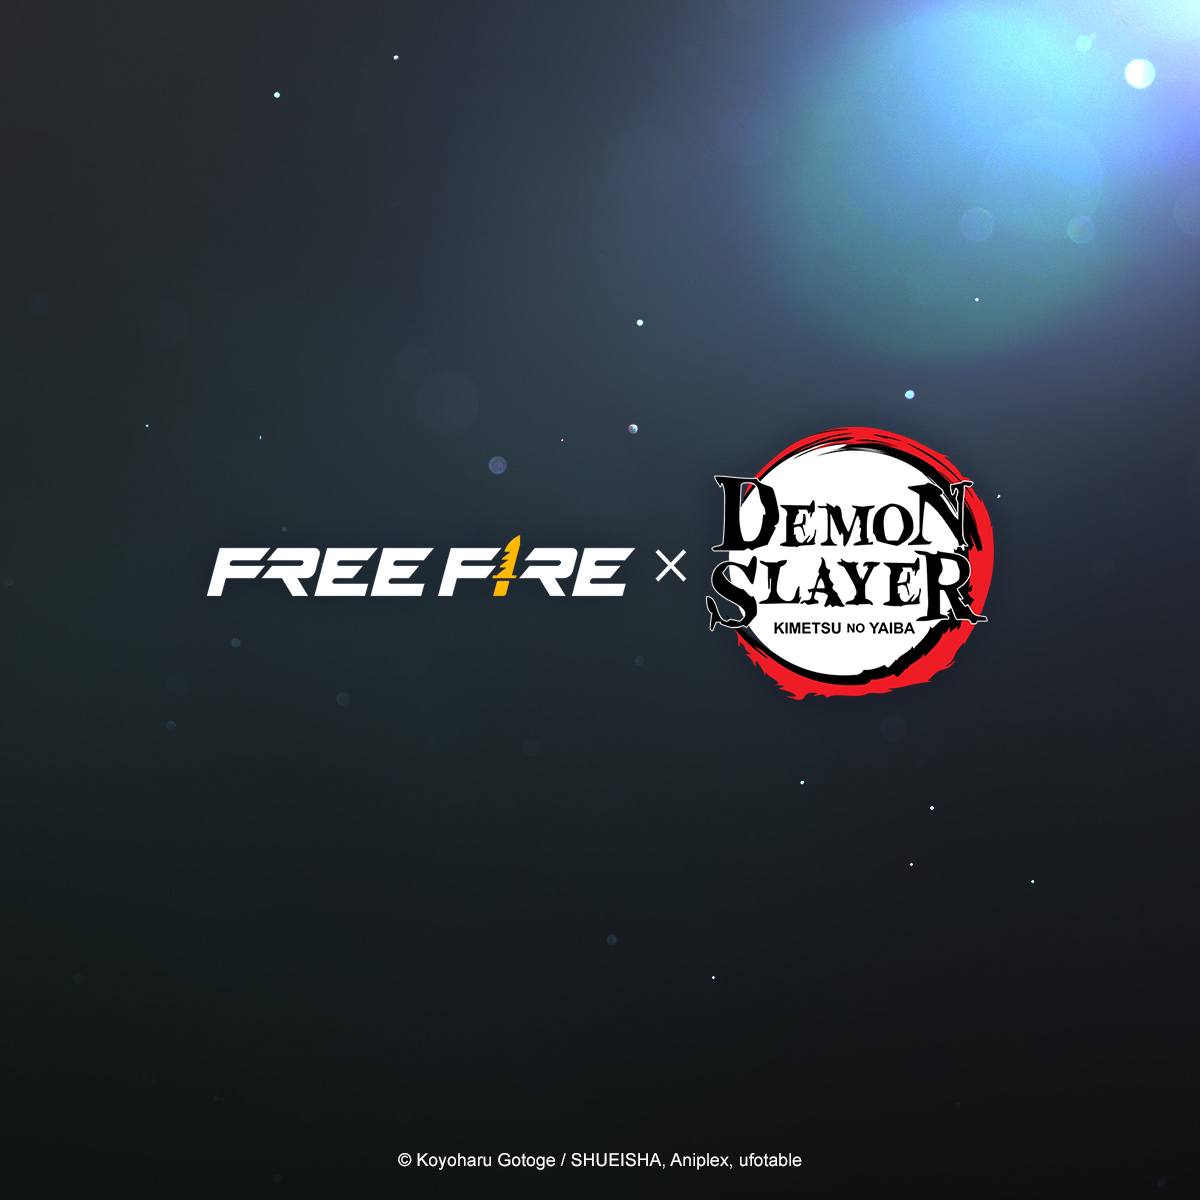 Colaboração Free Fire x Demon Slayer - Tudo o que você precisa saber sobre  a colaboração: Itens vazados para a atualização OB41